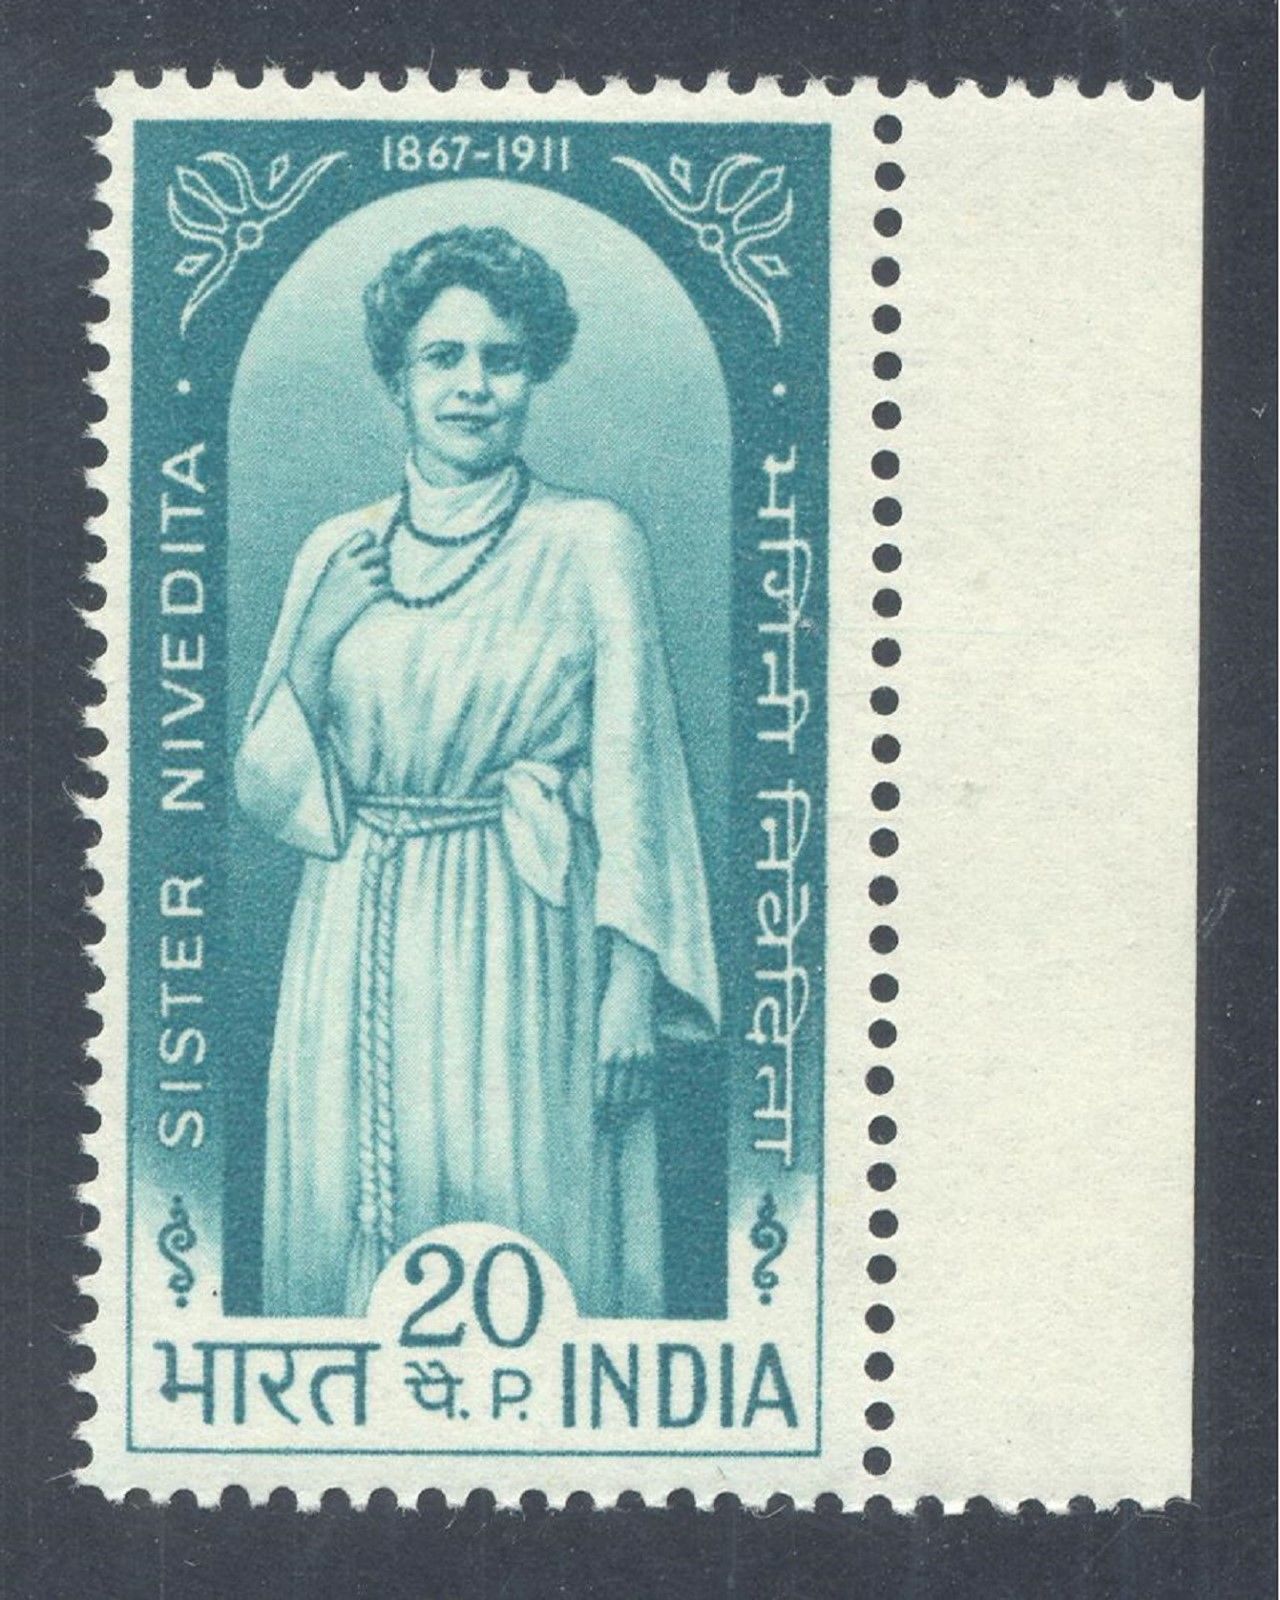 sister-nivedita-indian-art-history-national-movement